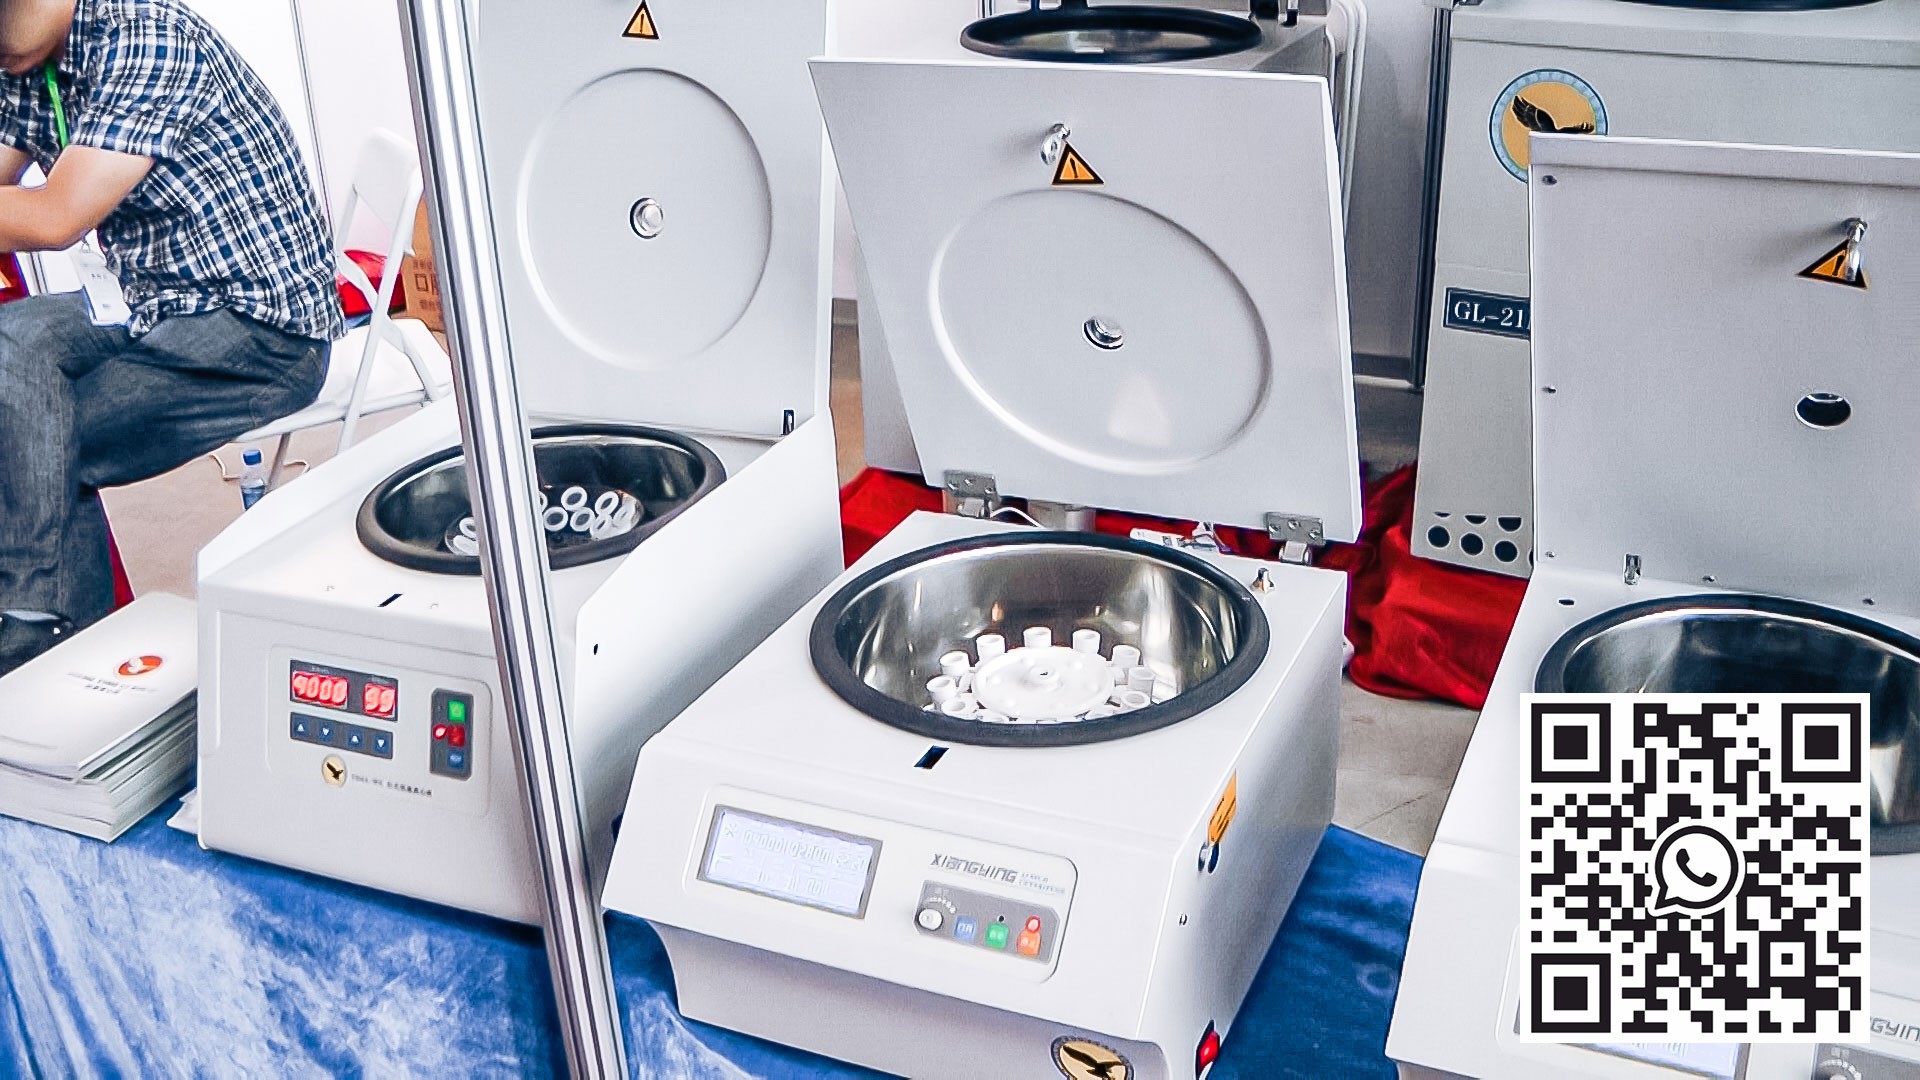 Automatyczny sprzęt do mieszania próbek płynnych w wirówce w produkcji farmaceutycznej